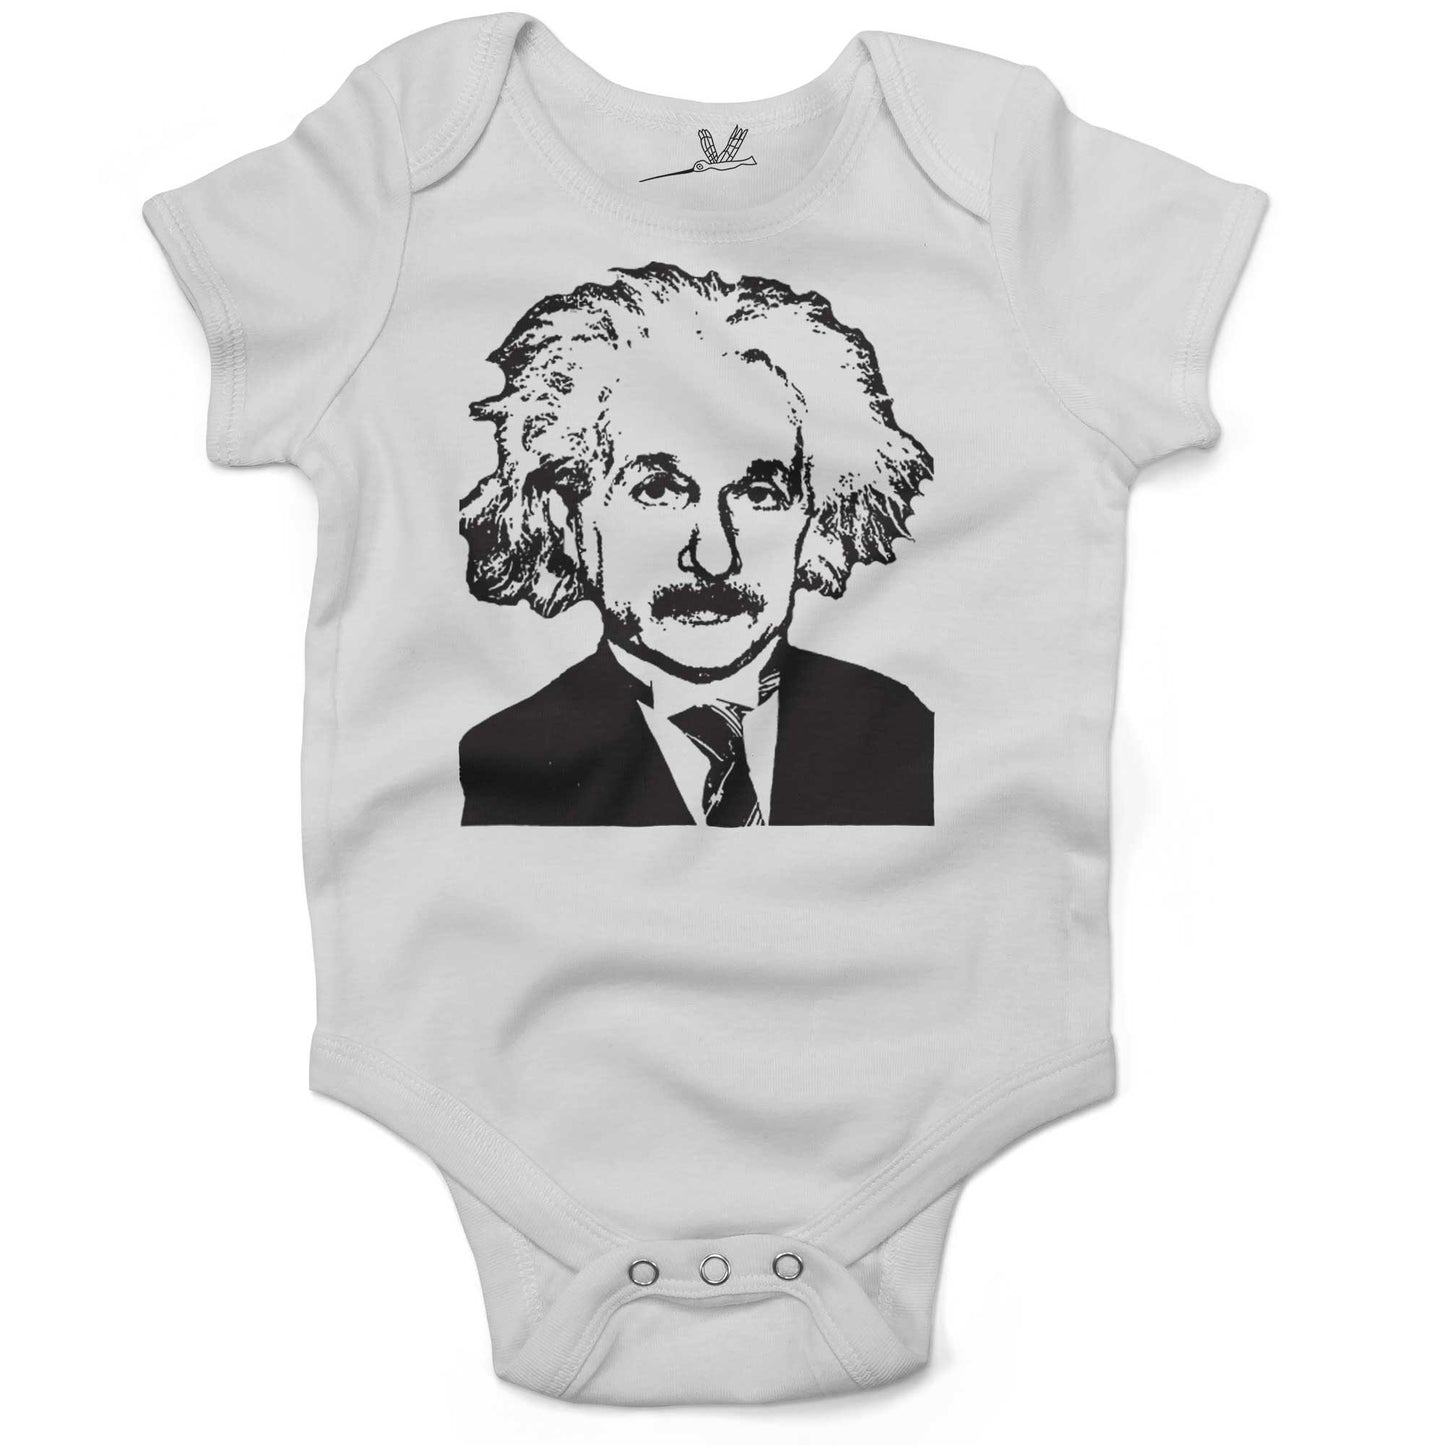 Albert Einstein Infant Bodysuit or Raglan Baby Tee-White-3-6 months